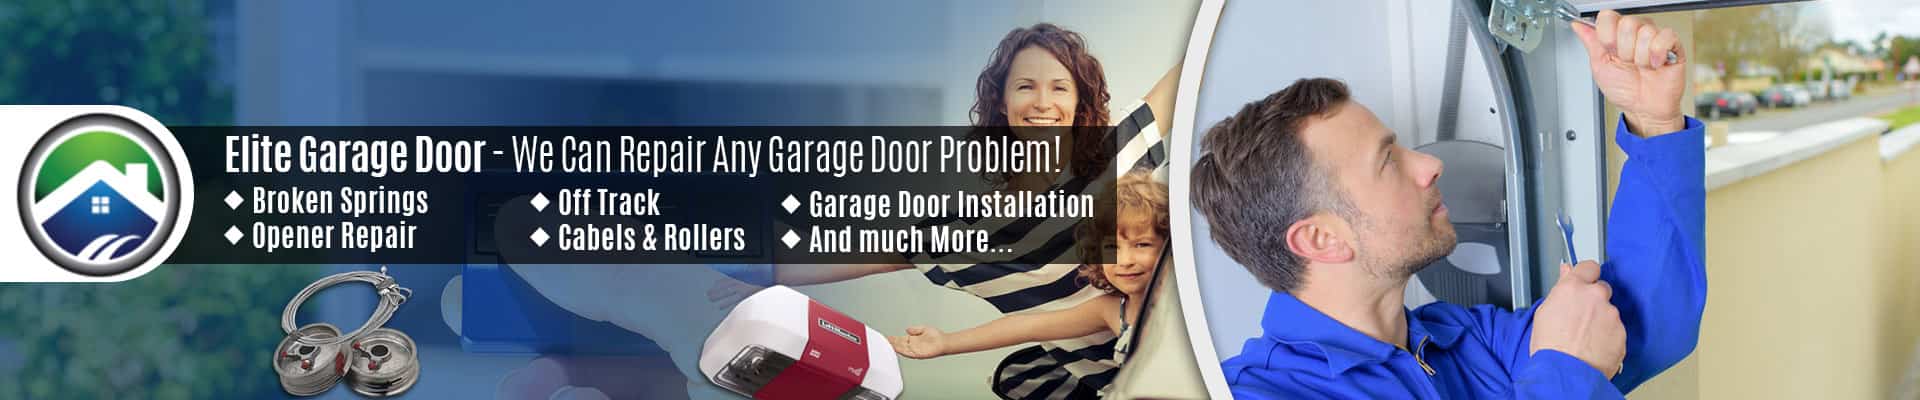 Garage Door Repair Service Whidbey Island – Elite Garage Door of Marysville 